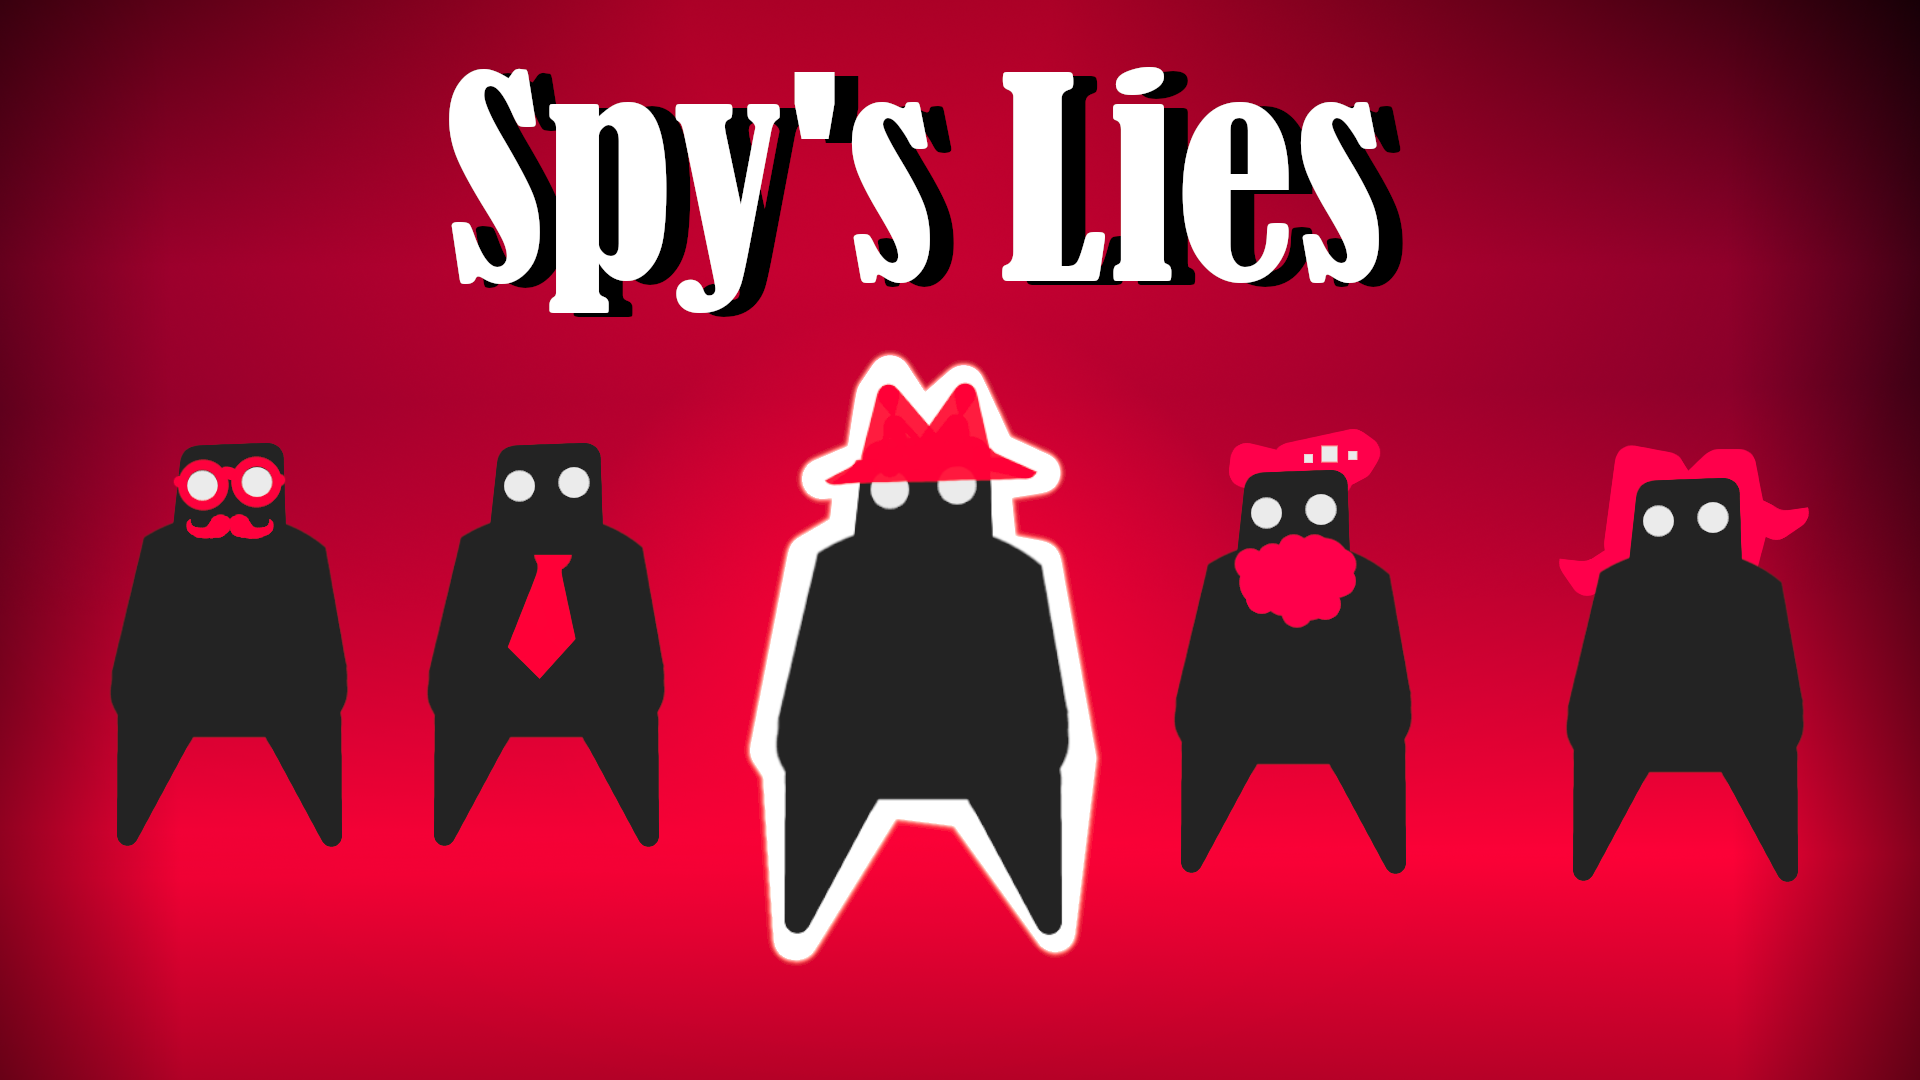 Spy's Lies